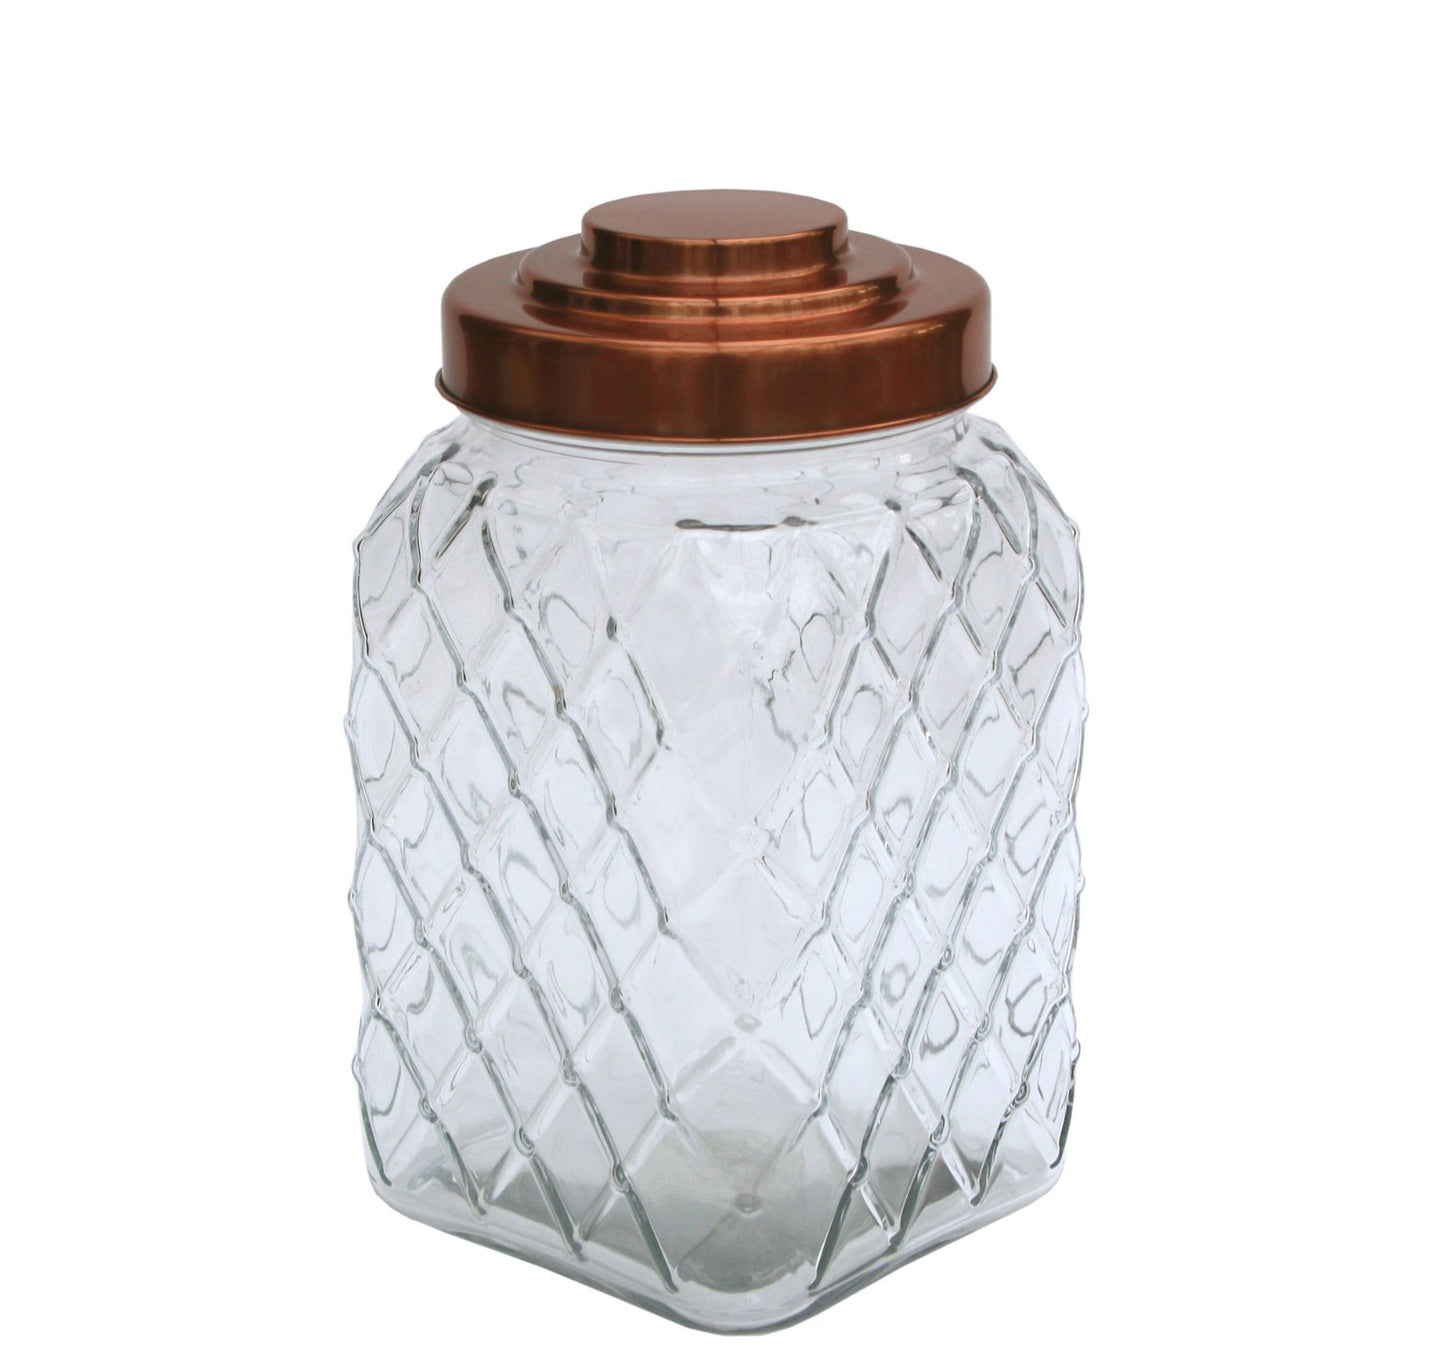 Copper Lidded Square Glass Jar - 10.5 Inch Med